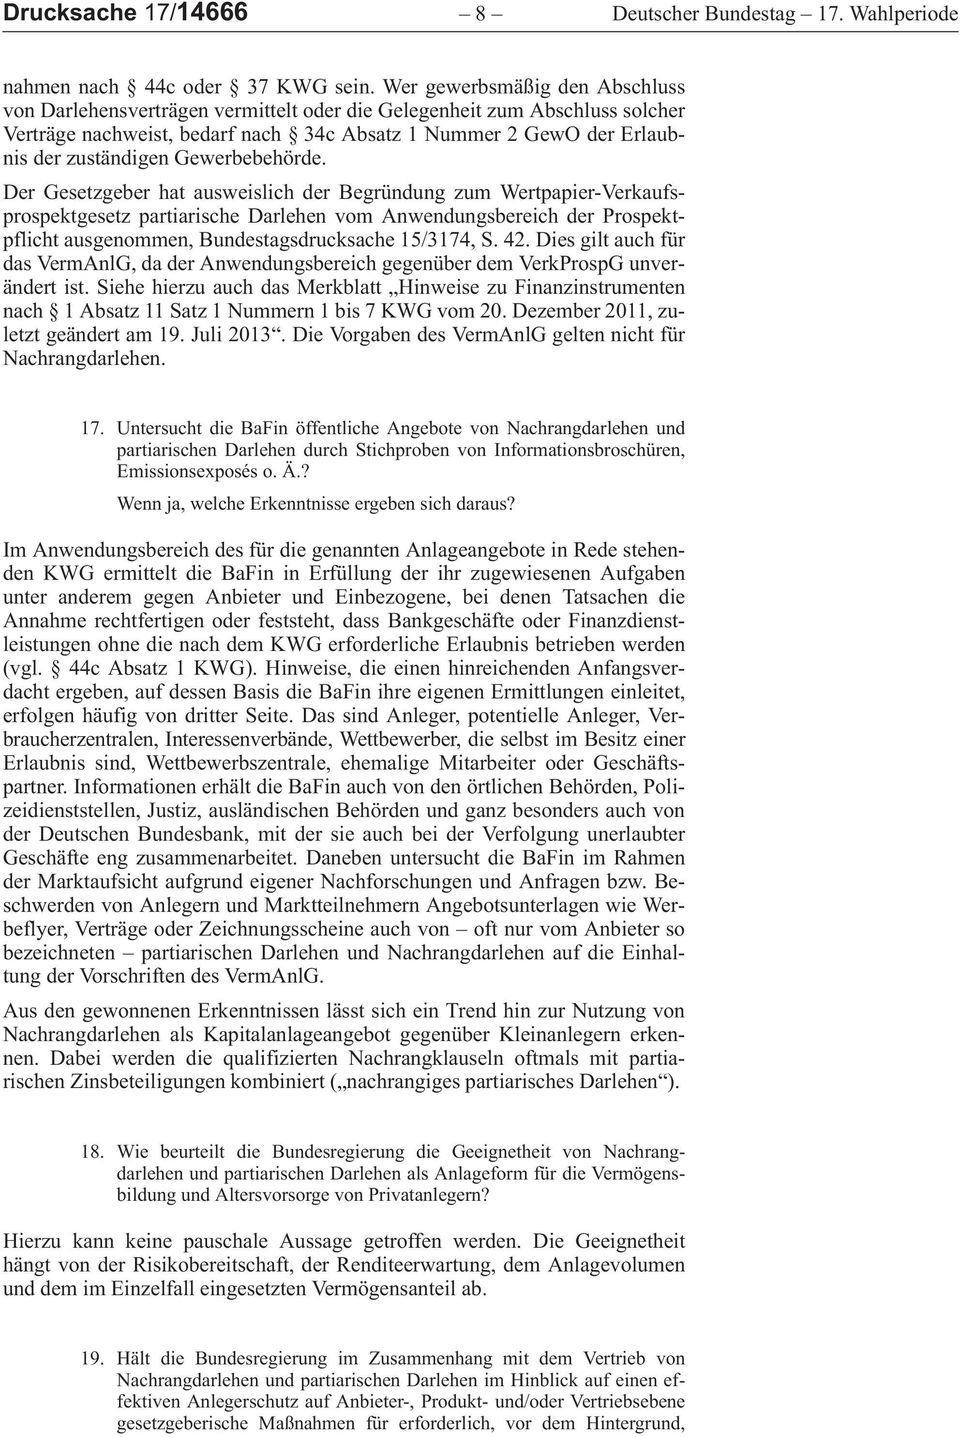 DerGesetzgeberhatausweislichderBegründungzumWertpapier-VerkaufsprospektgesetzpartiarischeDarlehenvomAnwendungsbereichderProspektpflichtausgenommen,Bundestagsdrucksache15/3174,S.42.